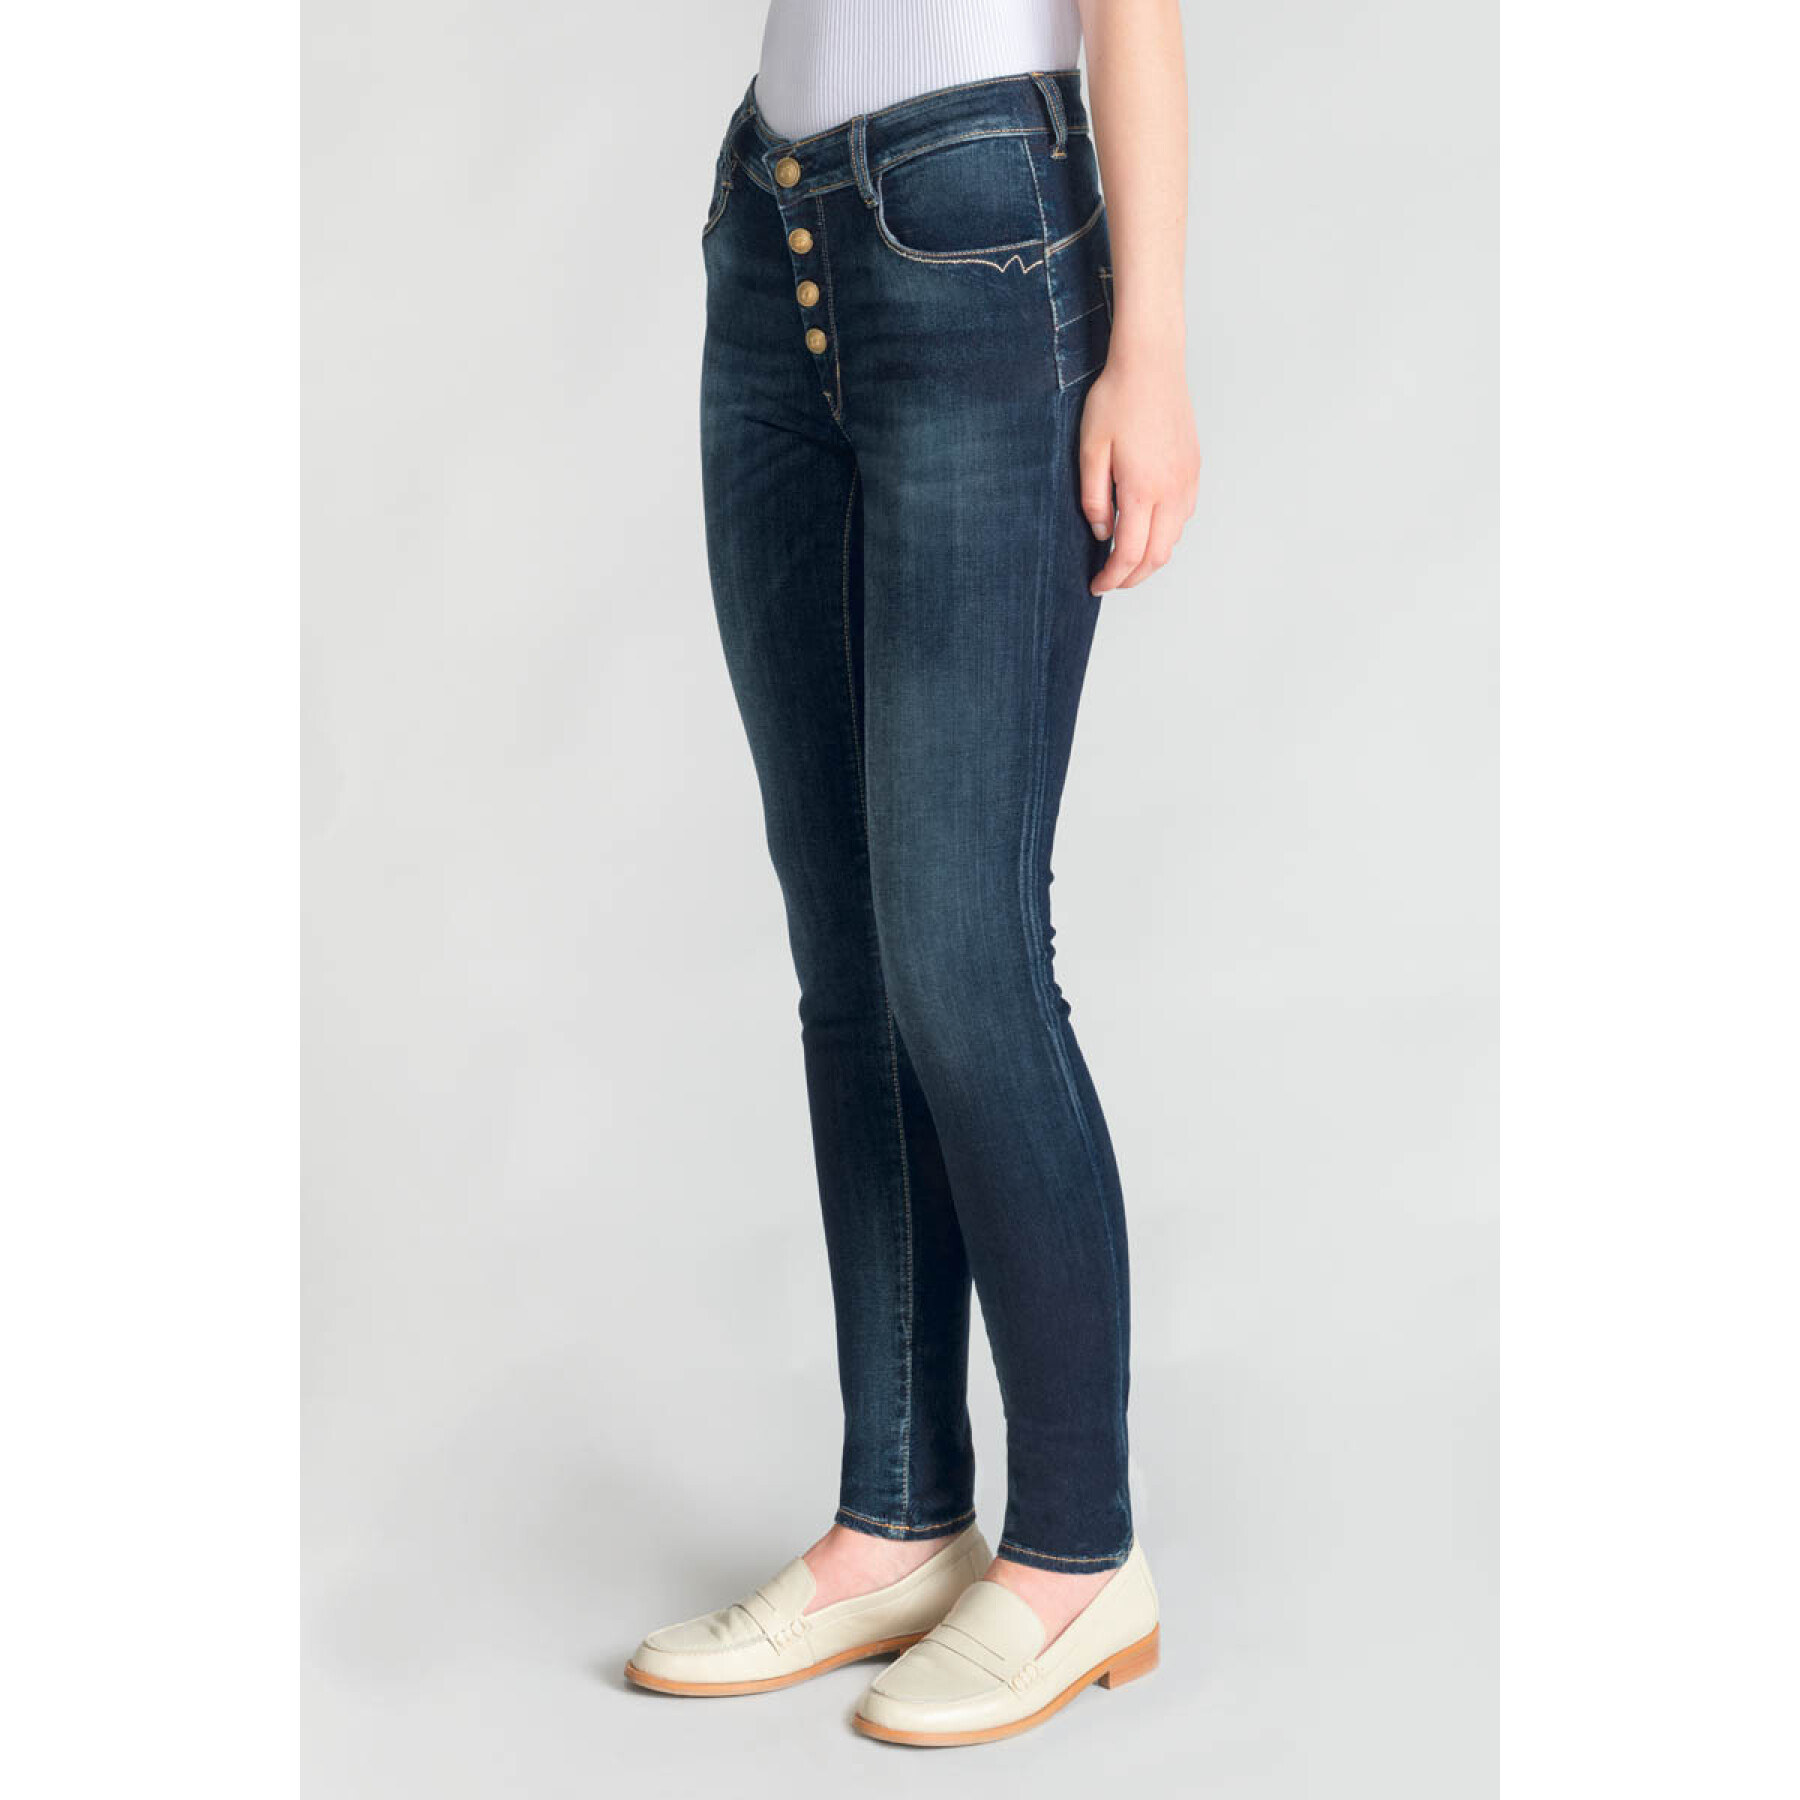 Women's skinny jeans Le Temps des cerises Amel N°1